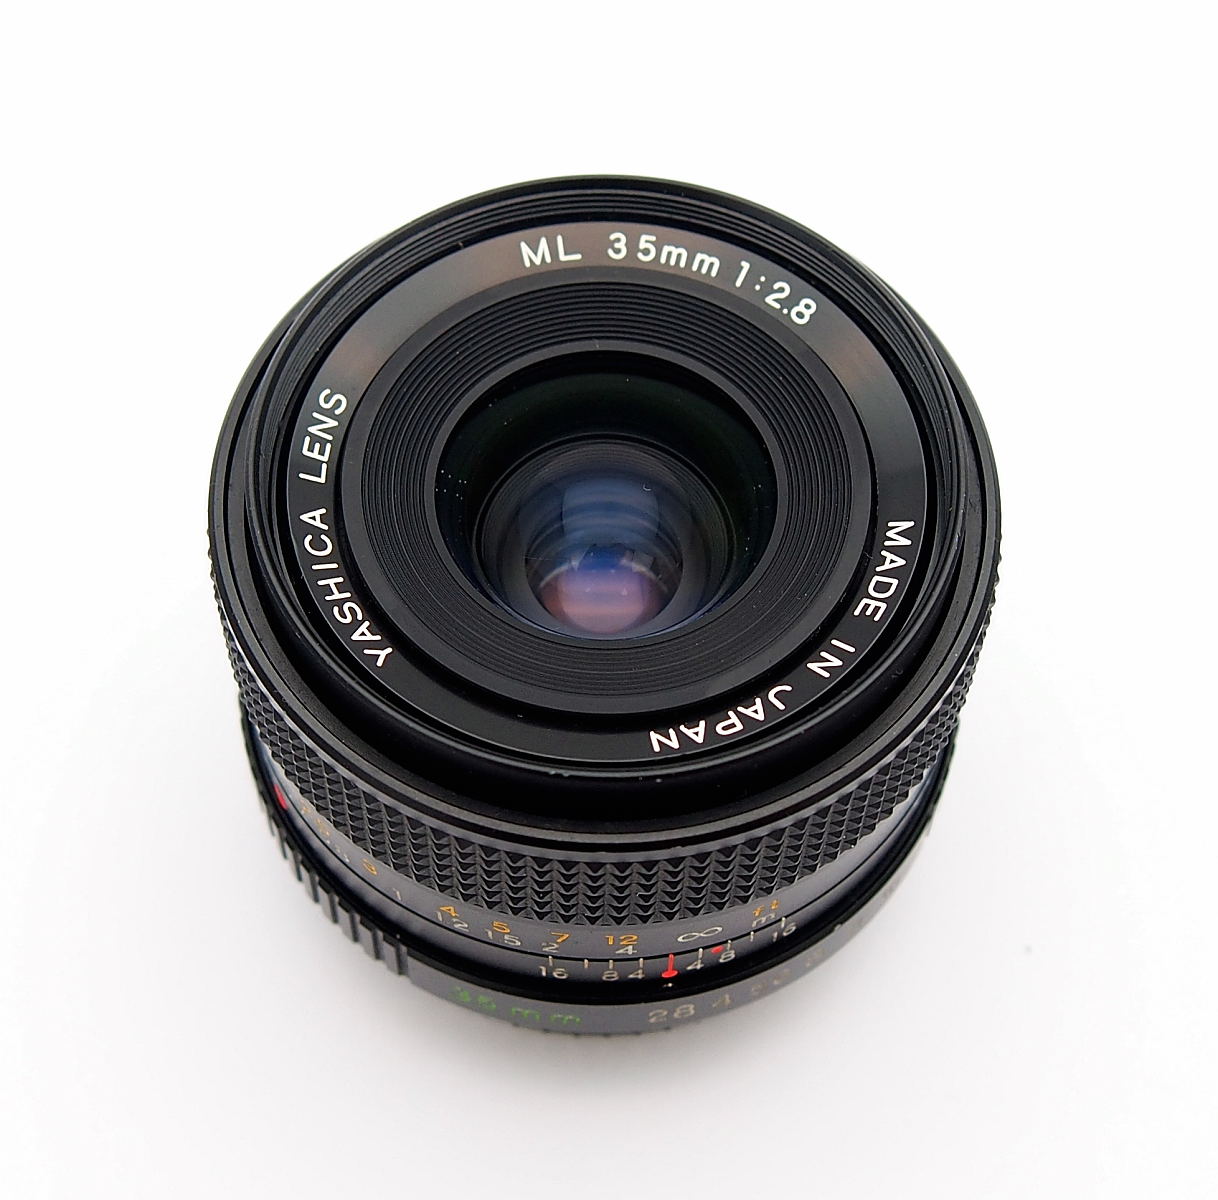 Yashica ML 35mm F2.8 Wide Angle Lens #9723